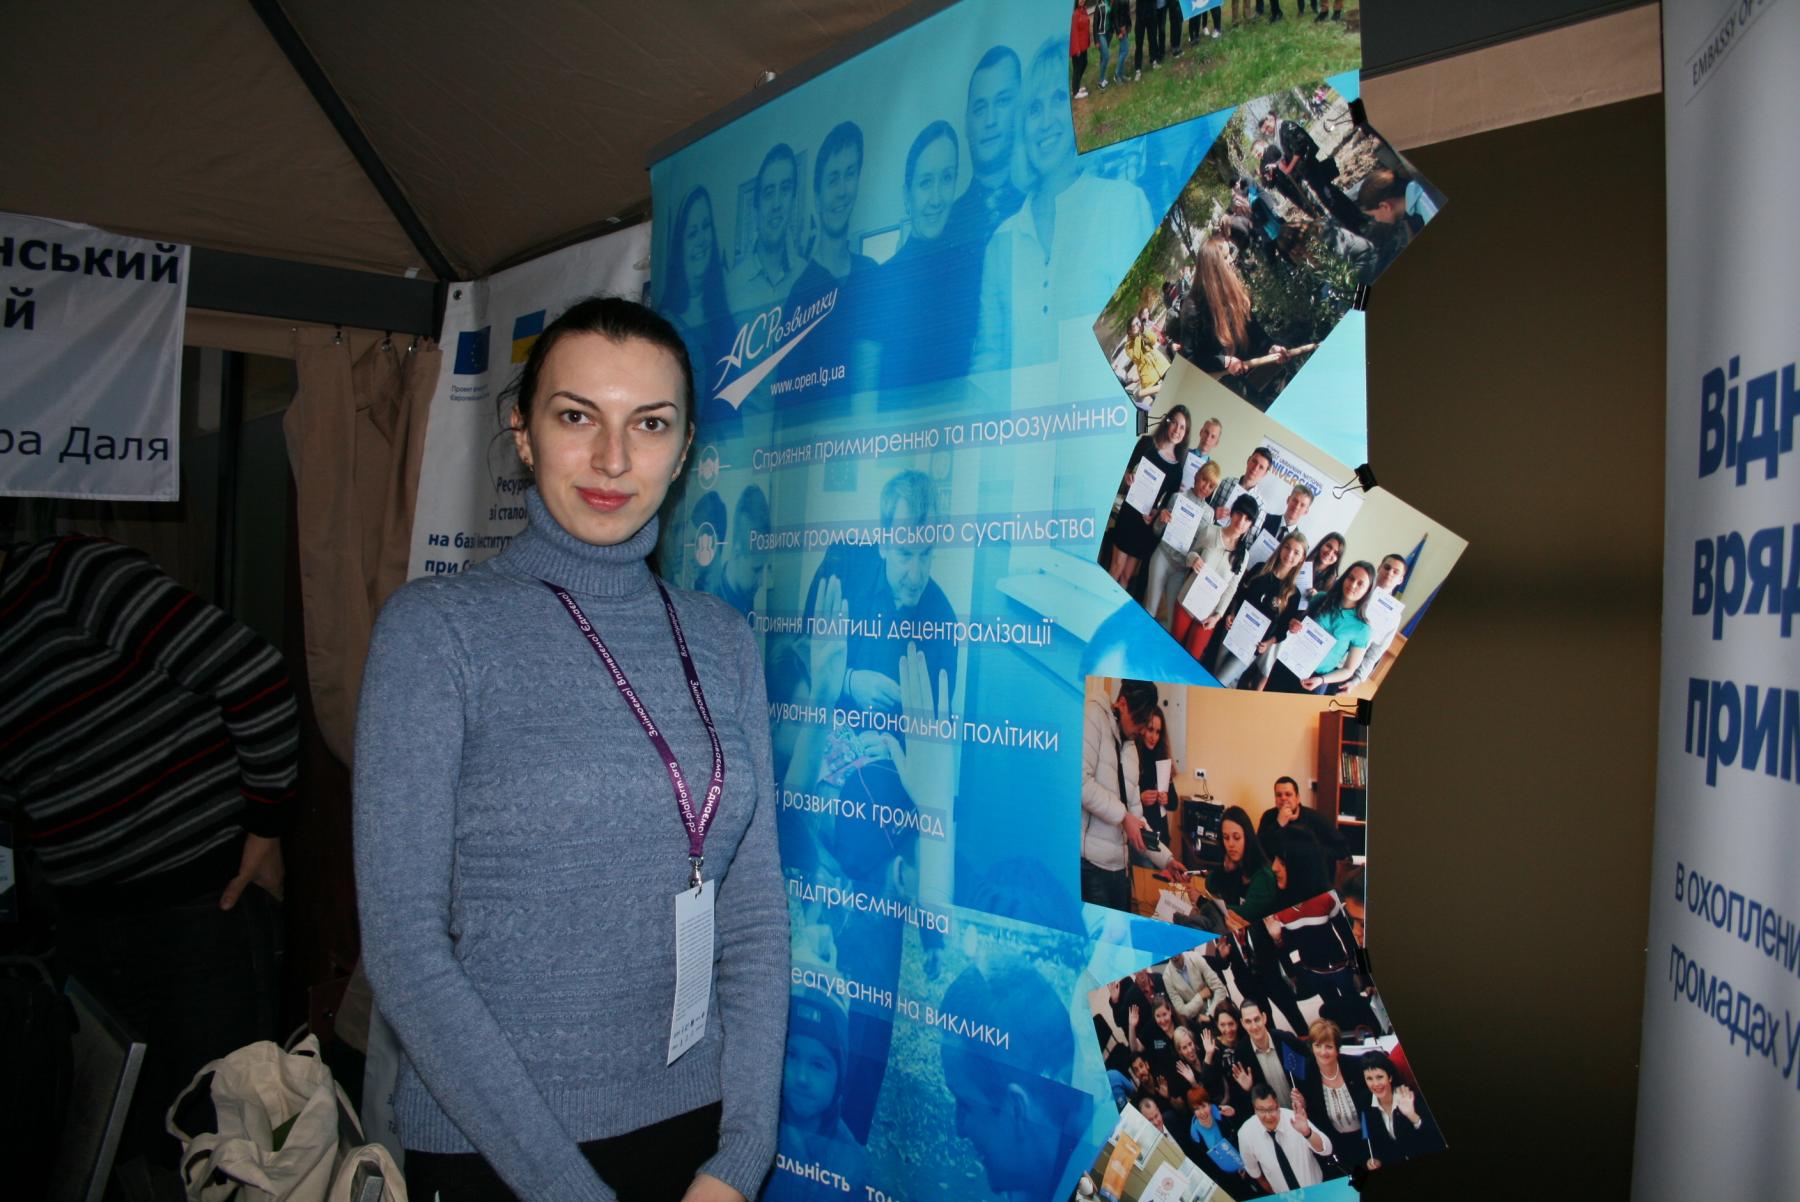 Ирина Склярова / Агентство стойкого развития Луганского региона